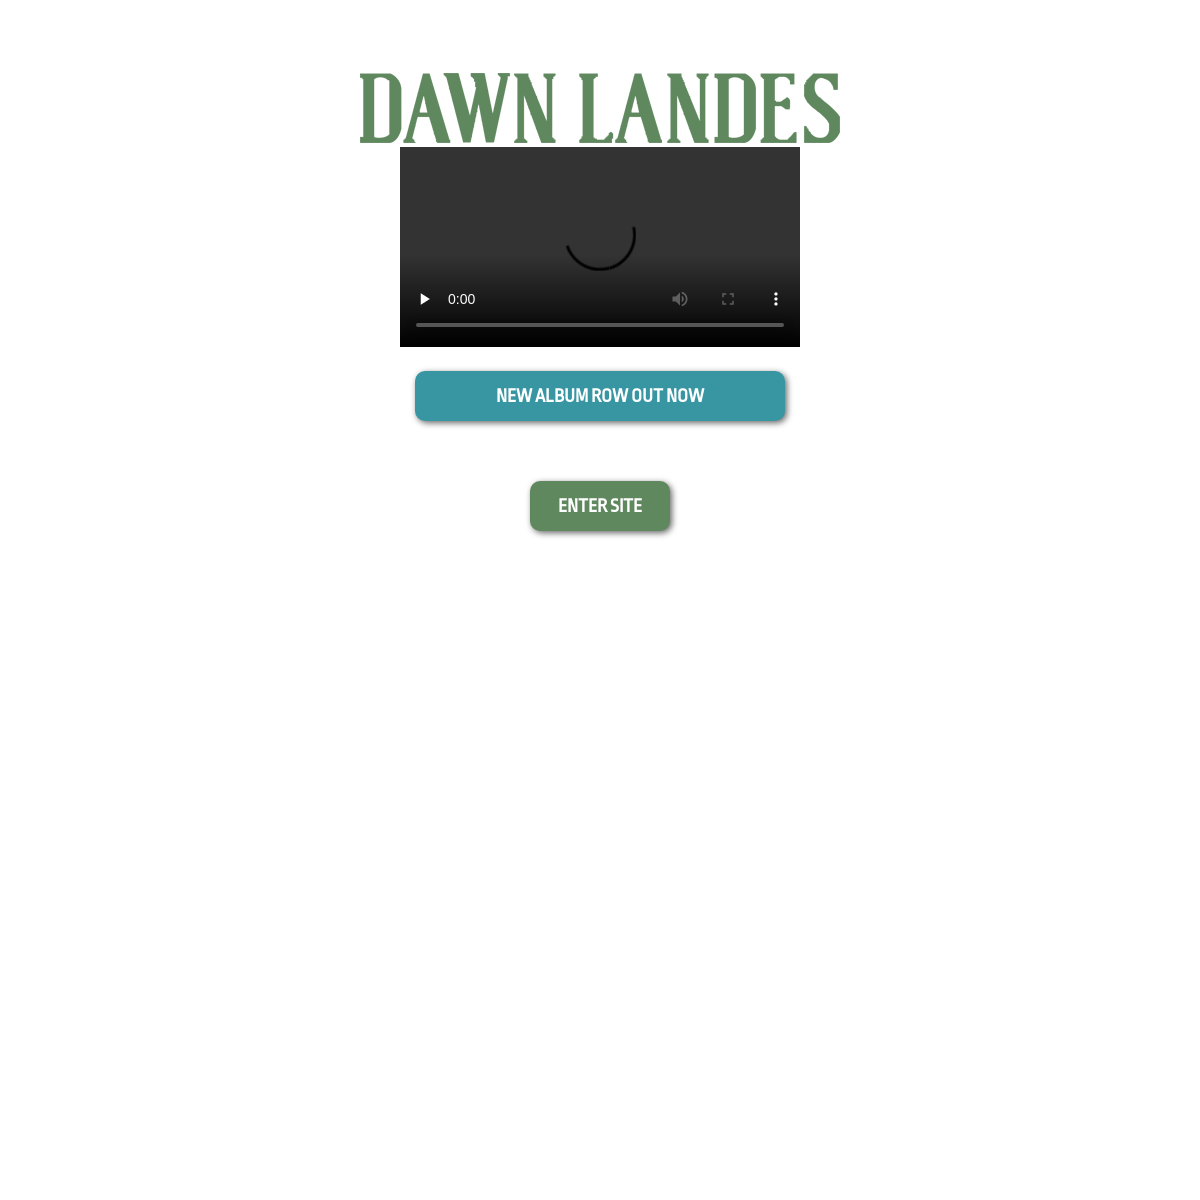 A complete backup of dawnlandes.com